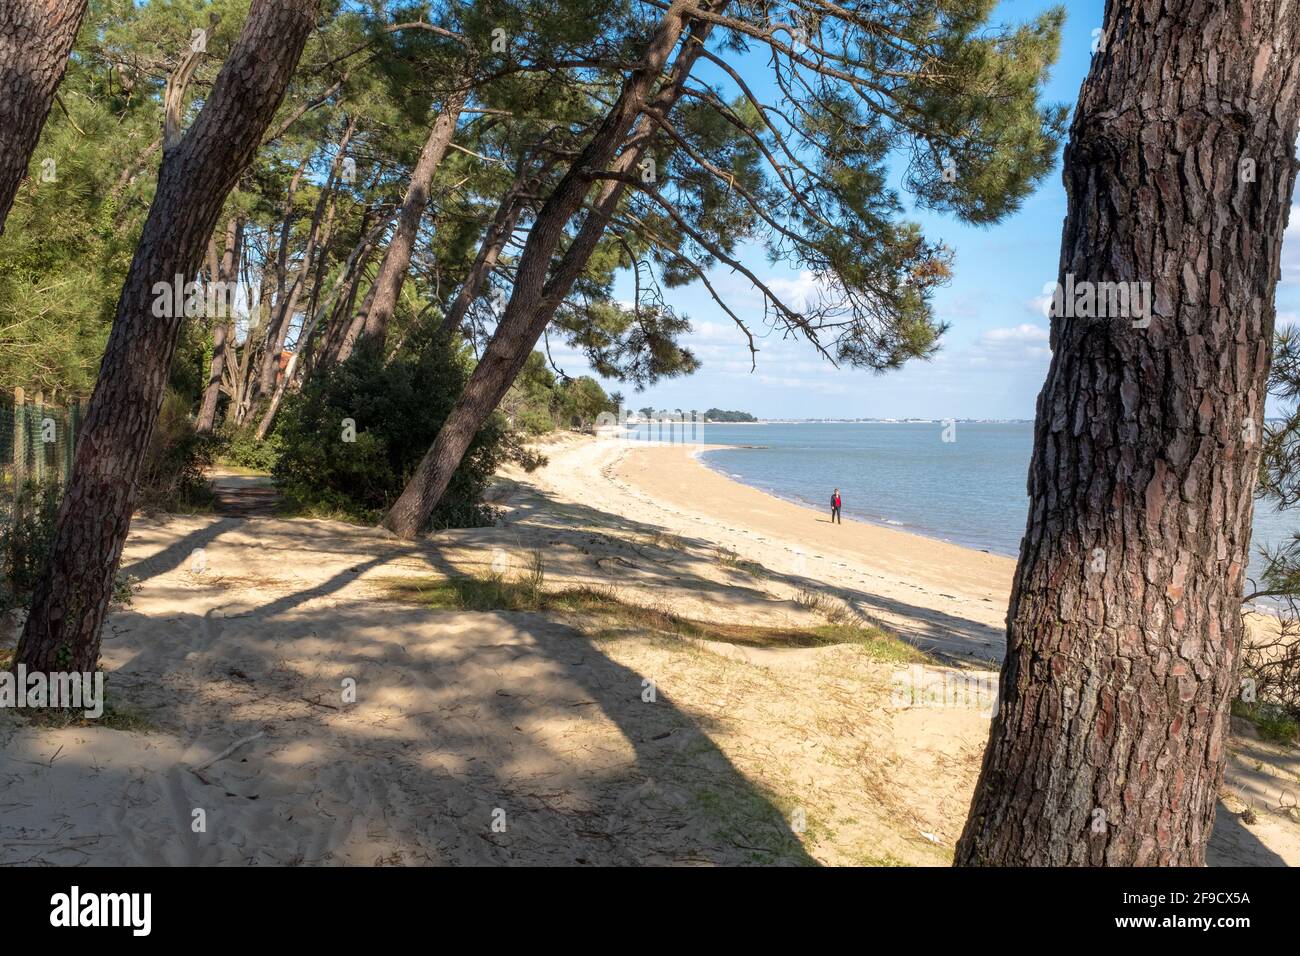 Saint-Trojan-les-Bains, Francia - 26 febbraio 2020: Una persona che indossa abiti rossi sta camminando su una spiaggia con acqua calma di fronte al continente un sole Foto Stock